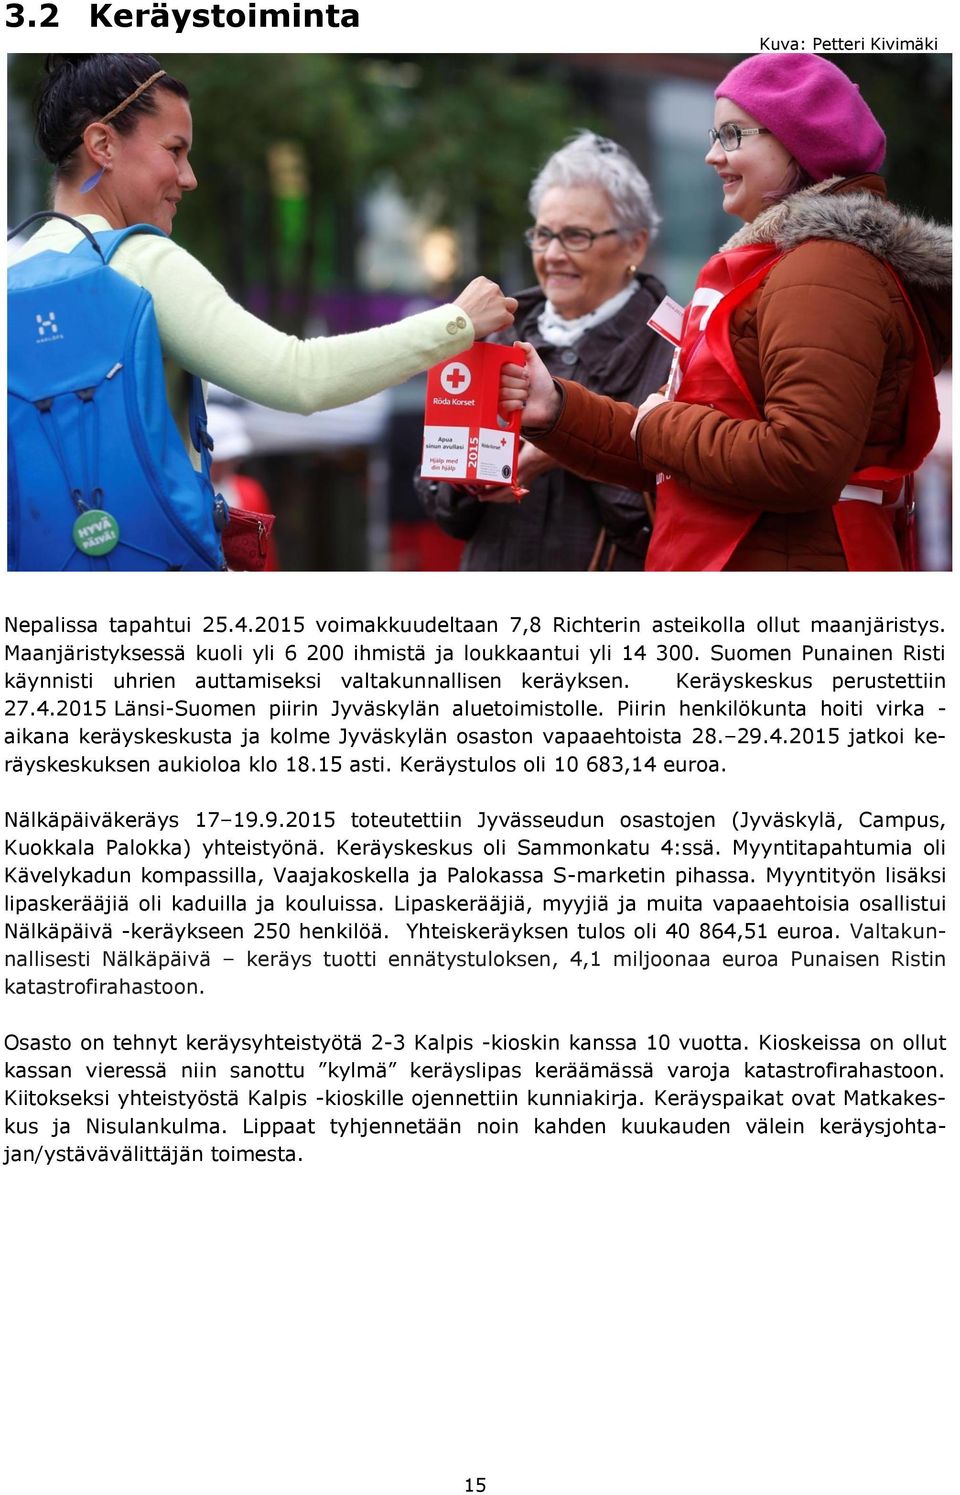 Piirin henkilökunta hoiti virka - aikana keräyskeskusta ja kolme Jyväskylän osaston vapaaehtoista 28. 29.4.2015 jatkoi keräyskeskuksen aukioloa klo 18.15 asti. Keräystulos oli 10 683,14 euroa.